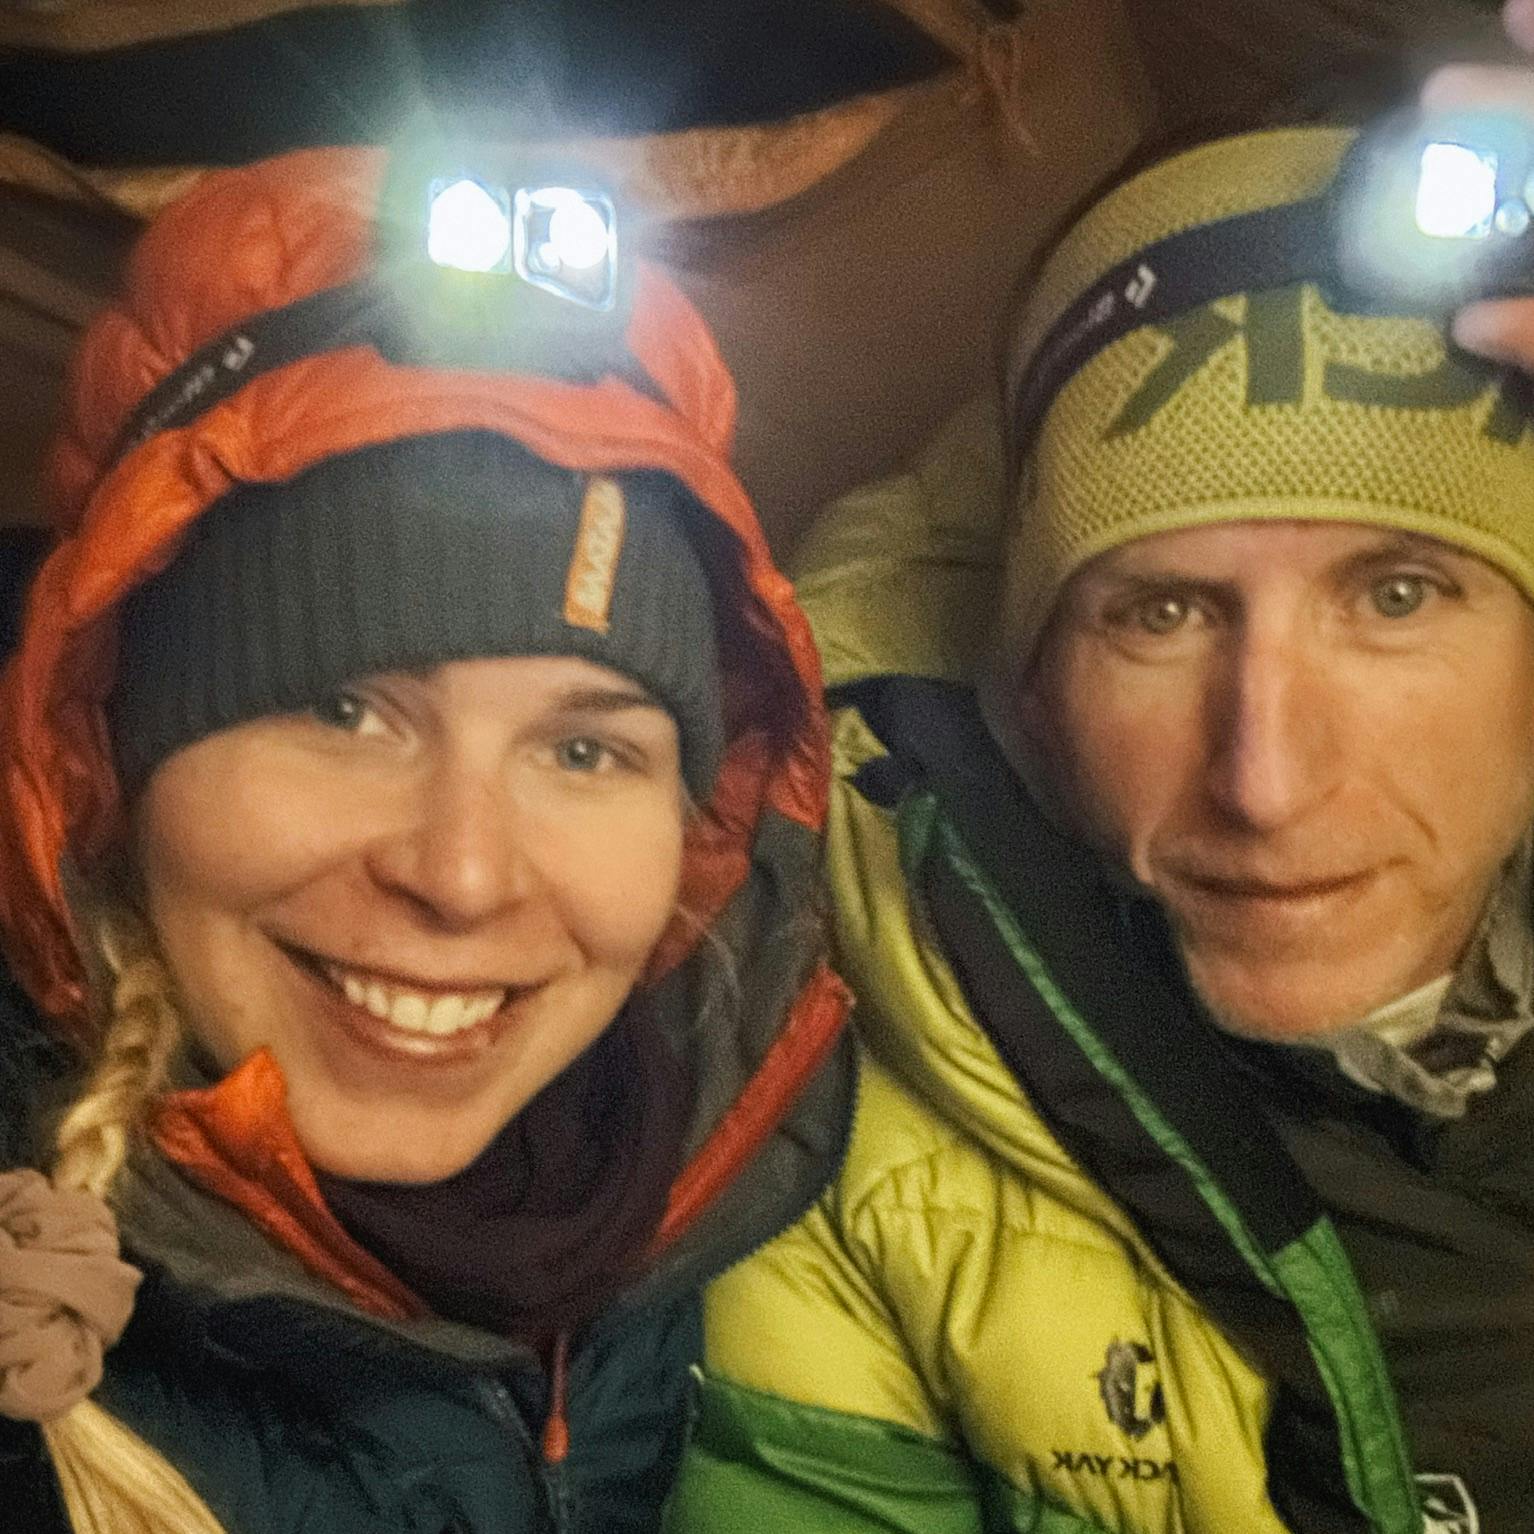 Emma Østergaard og Jakob Urth er makkerparret, der snart sætter kurs mod Mount Everest. De får dog også hjælp af deres sherpaer.
